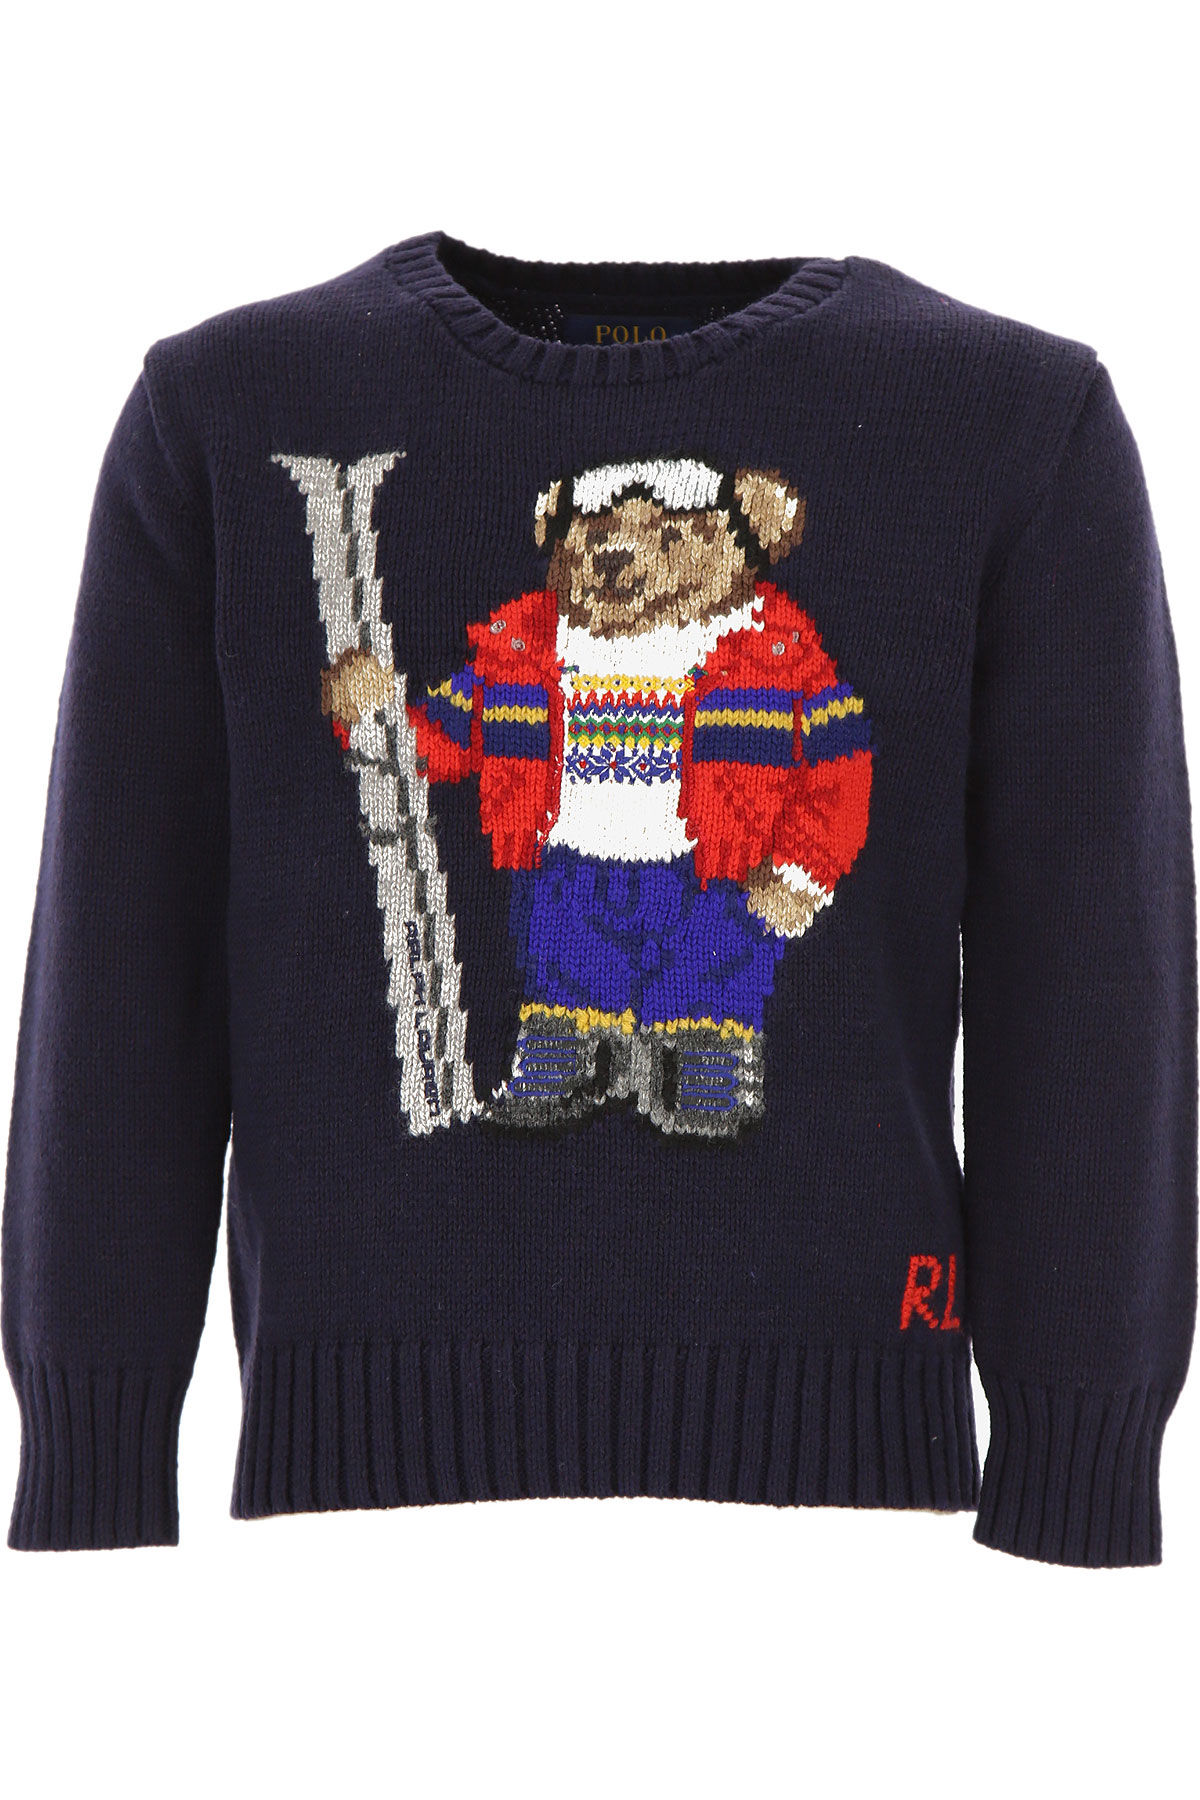 Ralph Lauren Kinder Pullover für Jungen Günstig im Sale, Marine blau, Baumwolle, 2017, 2Y 3Y